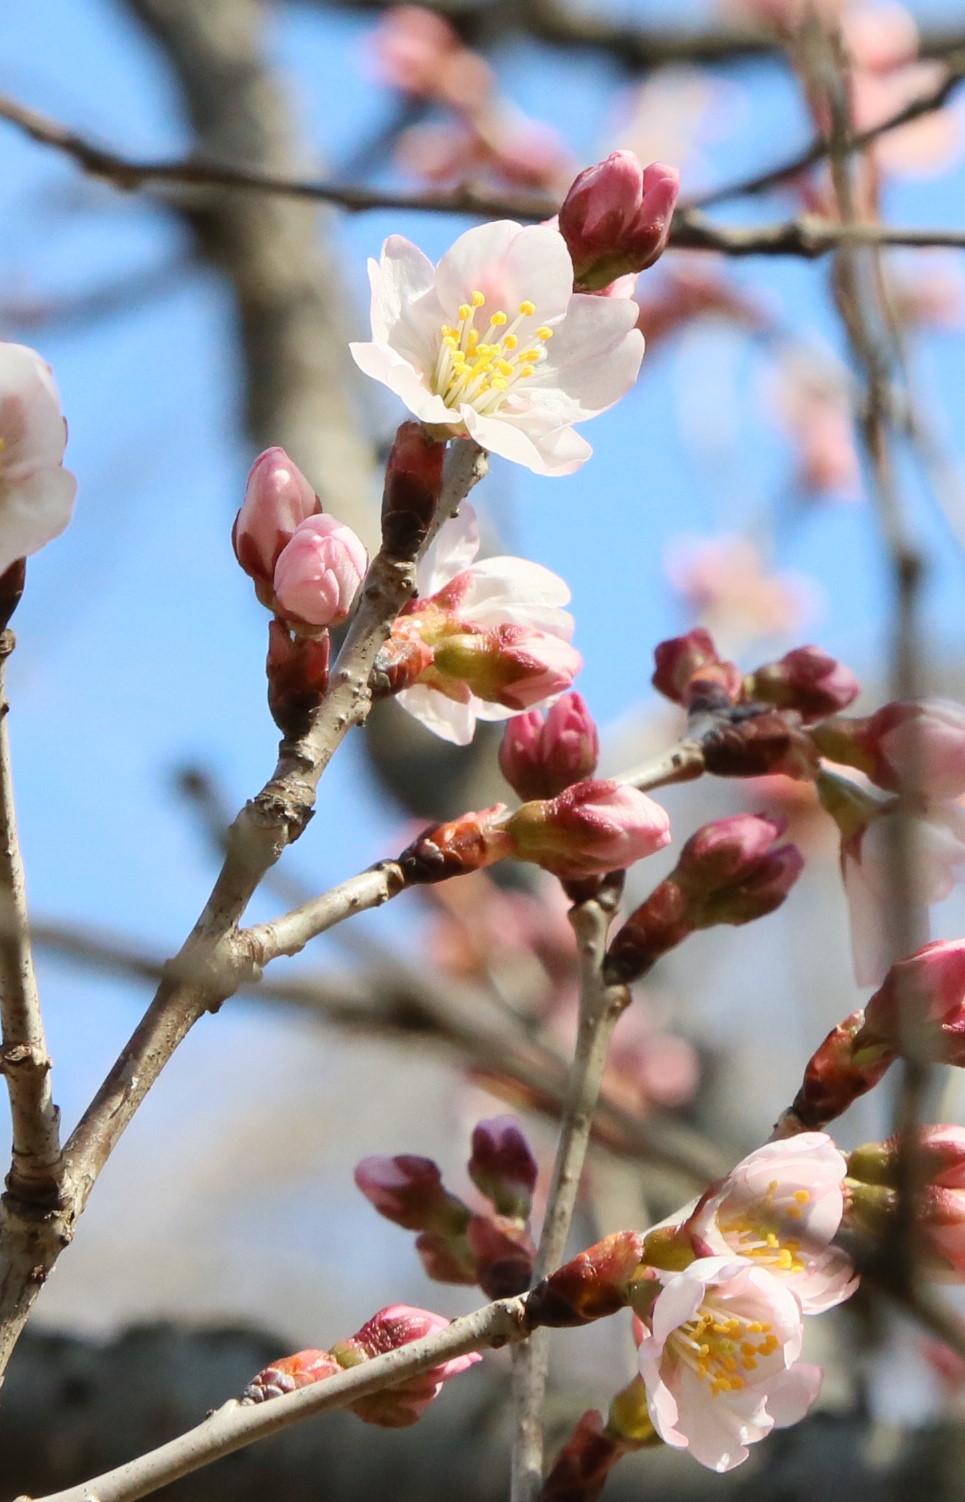 تويتر 神代植物公園 ニュース على تويتر スタッフより 広報係 さくら園で 東海桜 が開花しました マナザクラとカラミザクラの影響がある栽培品種 敬翁桜 けいおうざくら とも呼ばれ 切り花としても使われます サクラ 神代植物公園 T